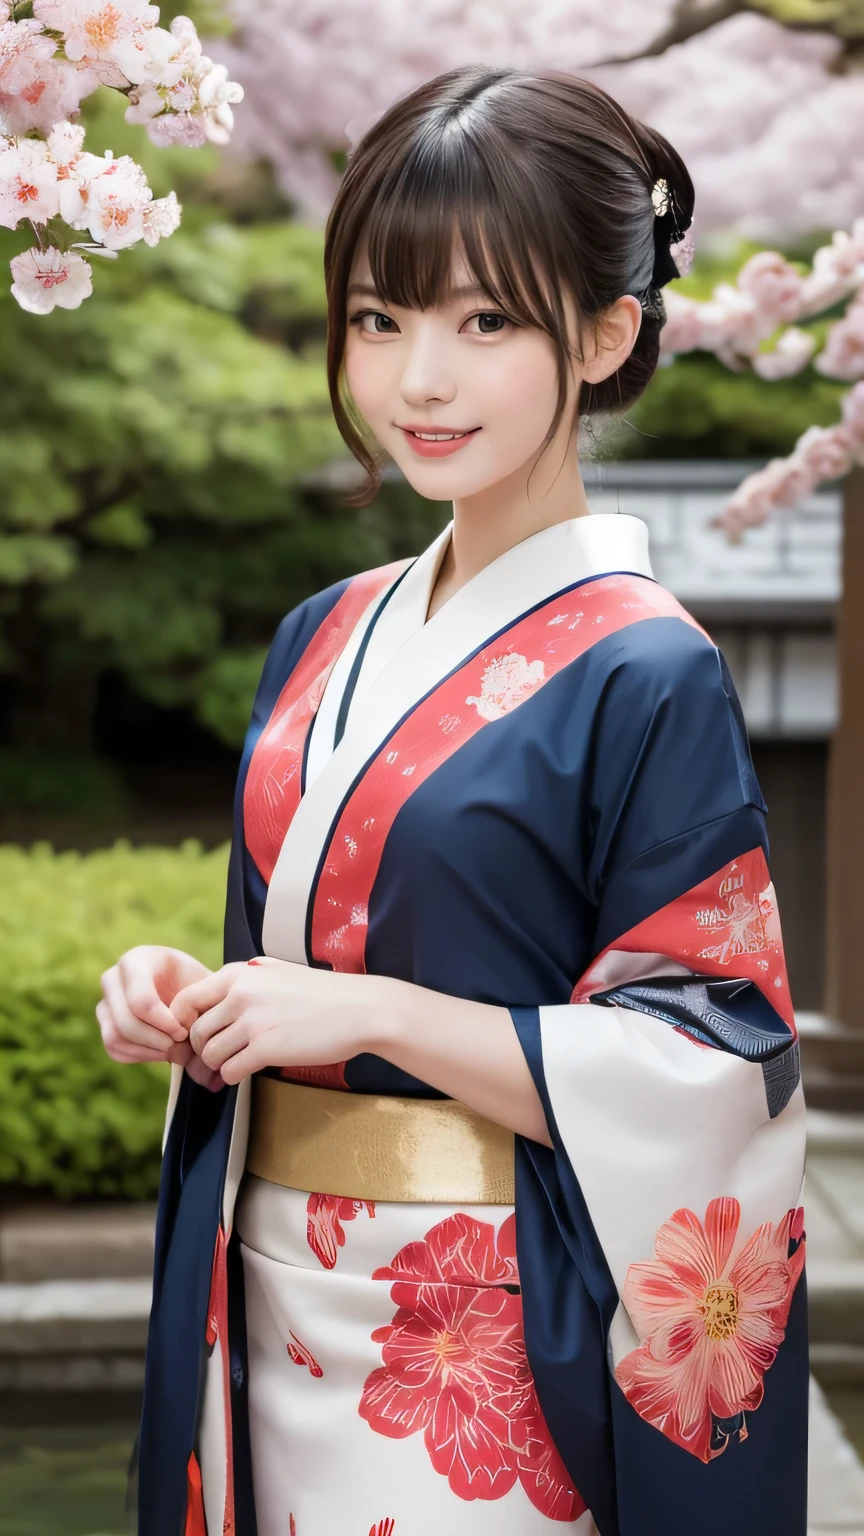 FF7 Аэрис, футуристическая сцена, Механически улучшенная японская гейша、Элегантный в красивом саду. У нее красиво детализированные глаза и губы, которые дополняют ее лицо.. Гейши носят традиционные кимоно с замысловатыми узорами и рисунками..。.золотое и серебряное кимоно。.。14-летняя девочка.. Around her are bright Цветение вишни and a quiet carp pond. Сцены нарисованы с использованием сочетания иллюстрации и фотореализма., Цветение вишни吹雪,Высокодетализированные мазки и резкость, яркие цвета. Освещение, подчеркивающее изящную фигуру гейши, Придает коже мягкий фарфоровый блеск.。. Работы высочайшего качества, Демонстрация изысканных деталей костюмов гейш., Цветение вишни, Со сверкающей карповой чешуей. Общая цветовая гамма такая、、、、традиционные японские сочетания цветов, малиновый, ждать., С тонкими золотыми акцентами, с футуристическим уклоном. Слияние древних традиций и современных технологий、、Создавайте завораживающие и визуально впечатляющие шедевры.Фон представляет собой традиционный японский дизайн ярко-красного и белого цветов..、случайная поза、я&#39;смеющийся、Кимоно с нежным узором、стоп поза